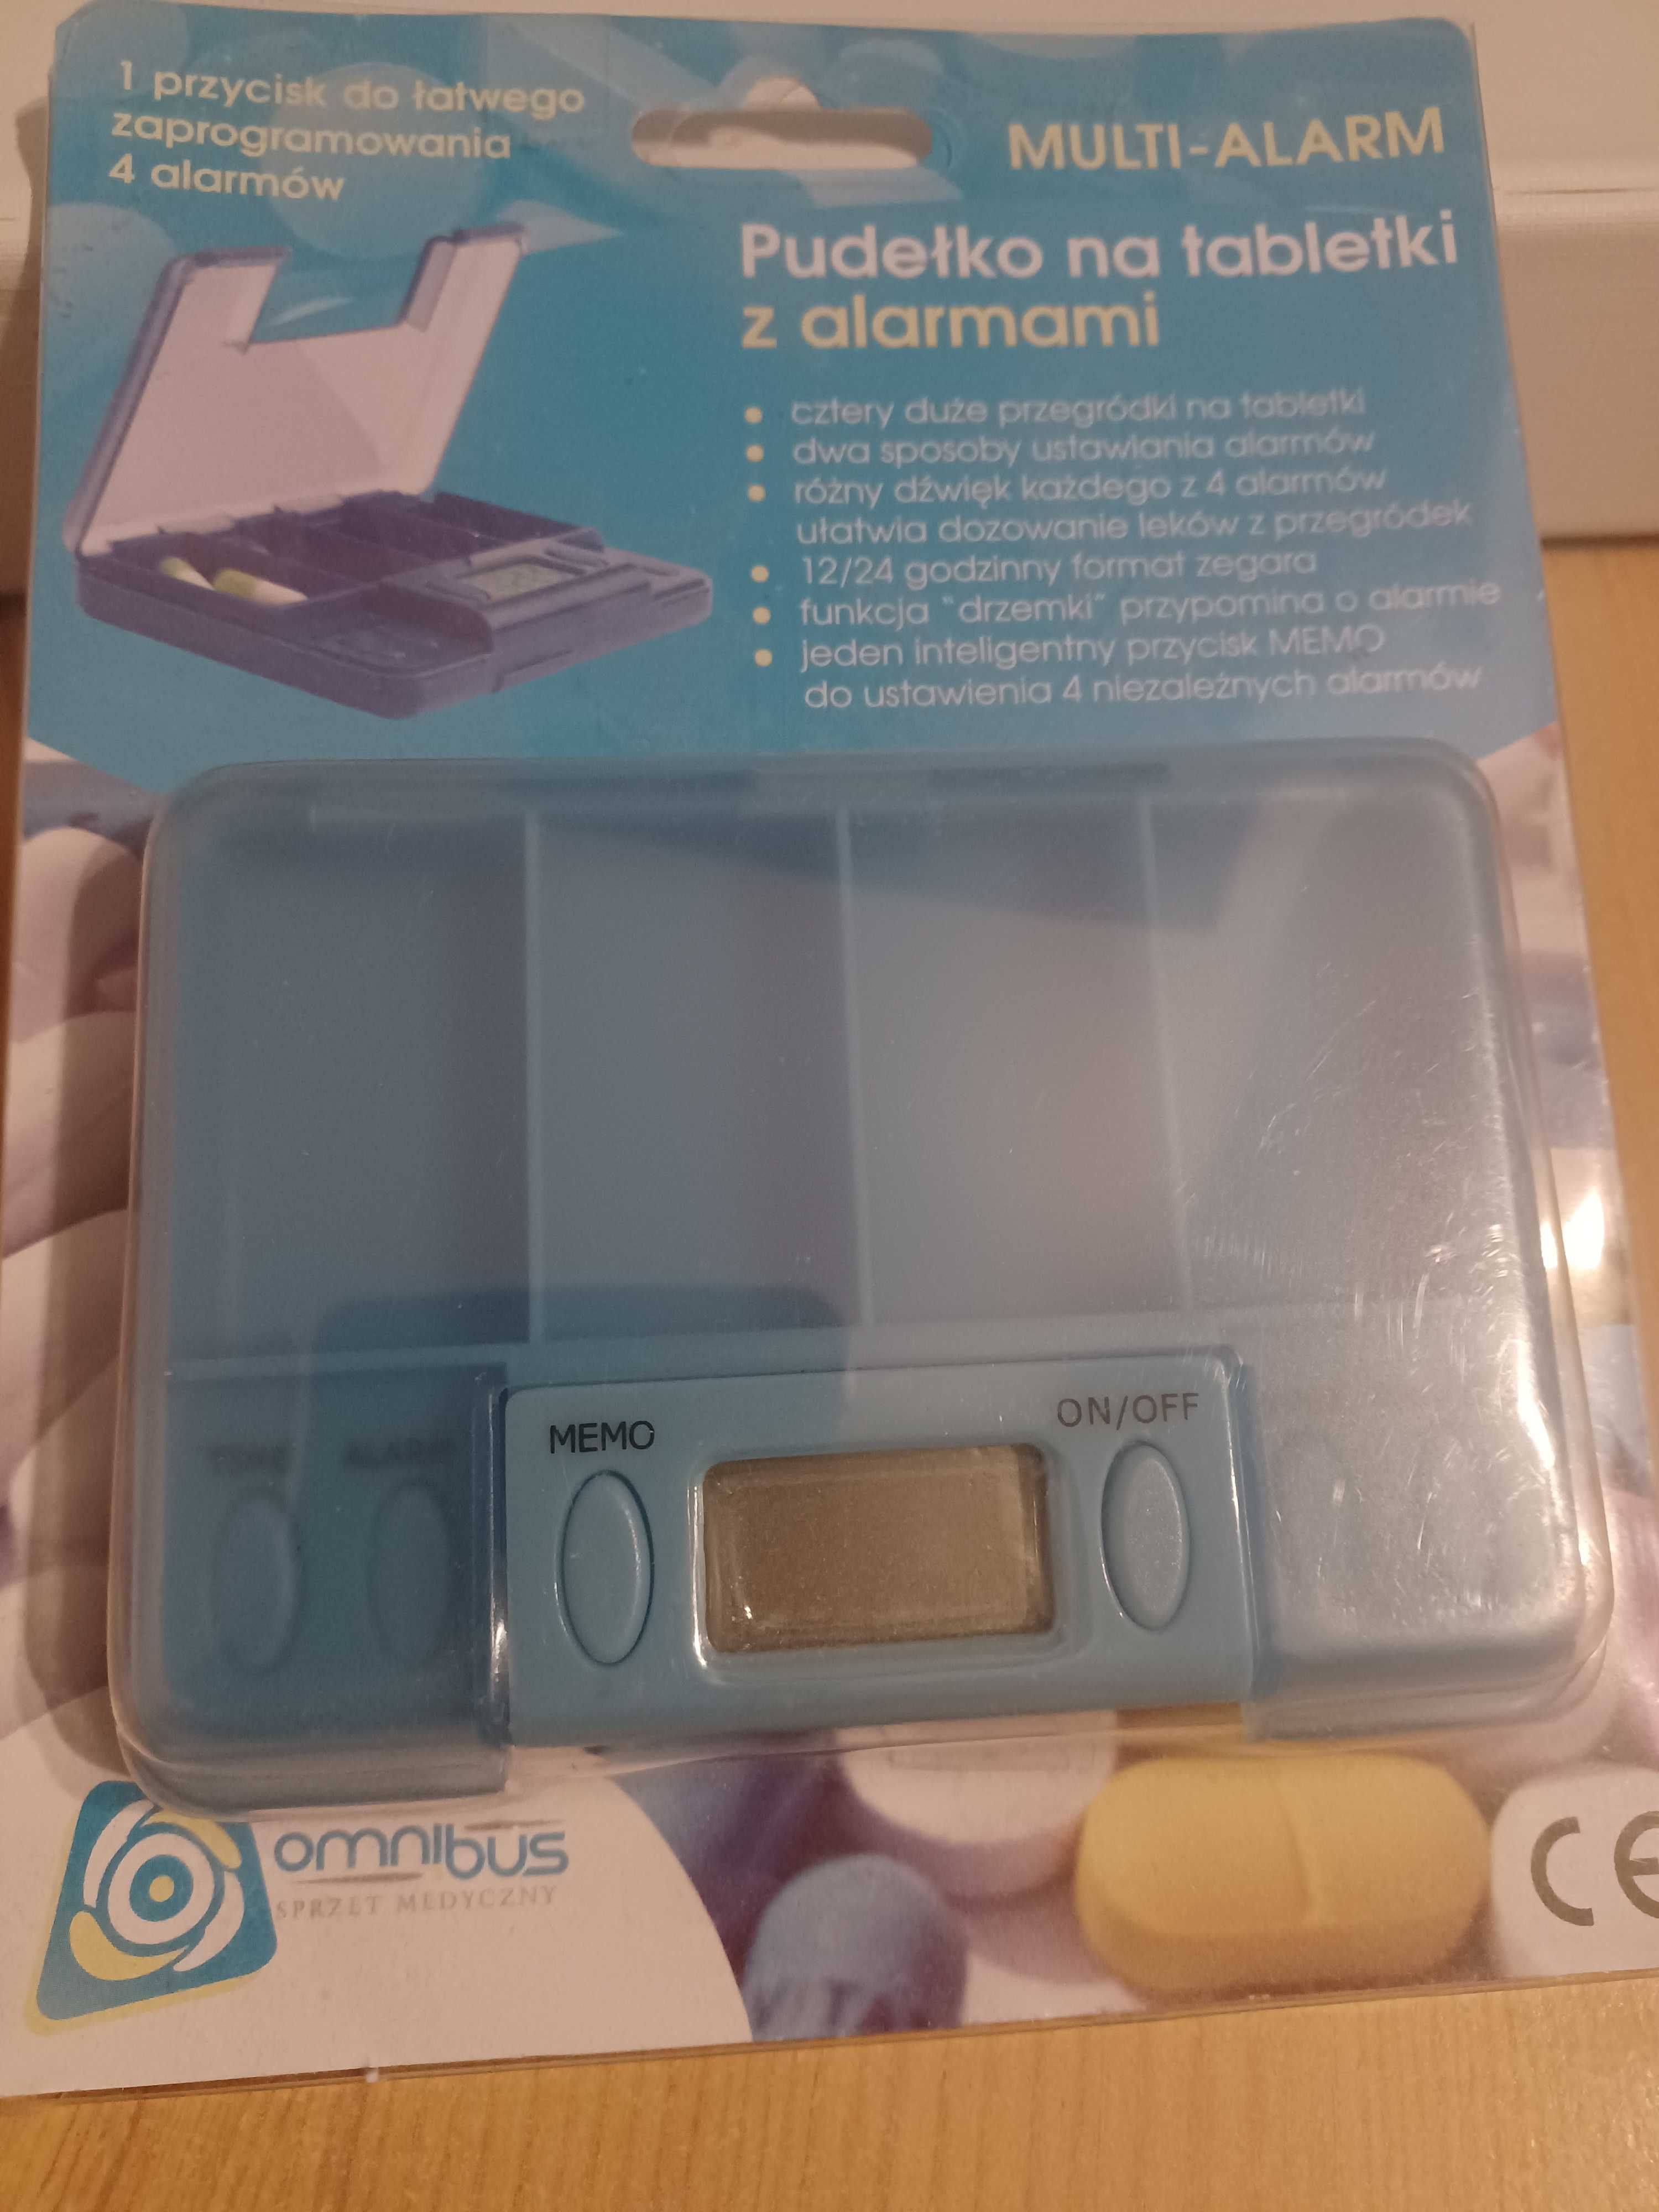 Pudełko kasetka na leki z alarmem